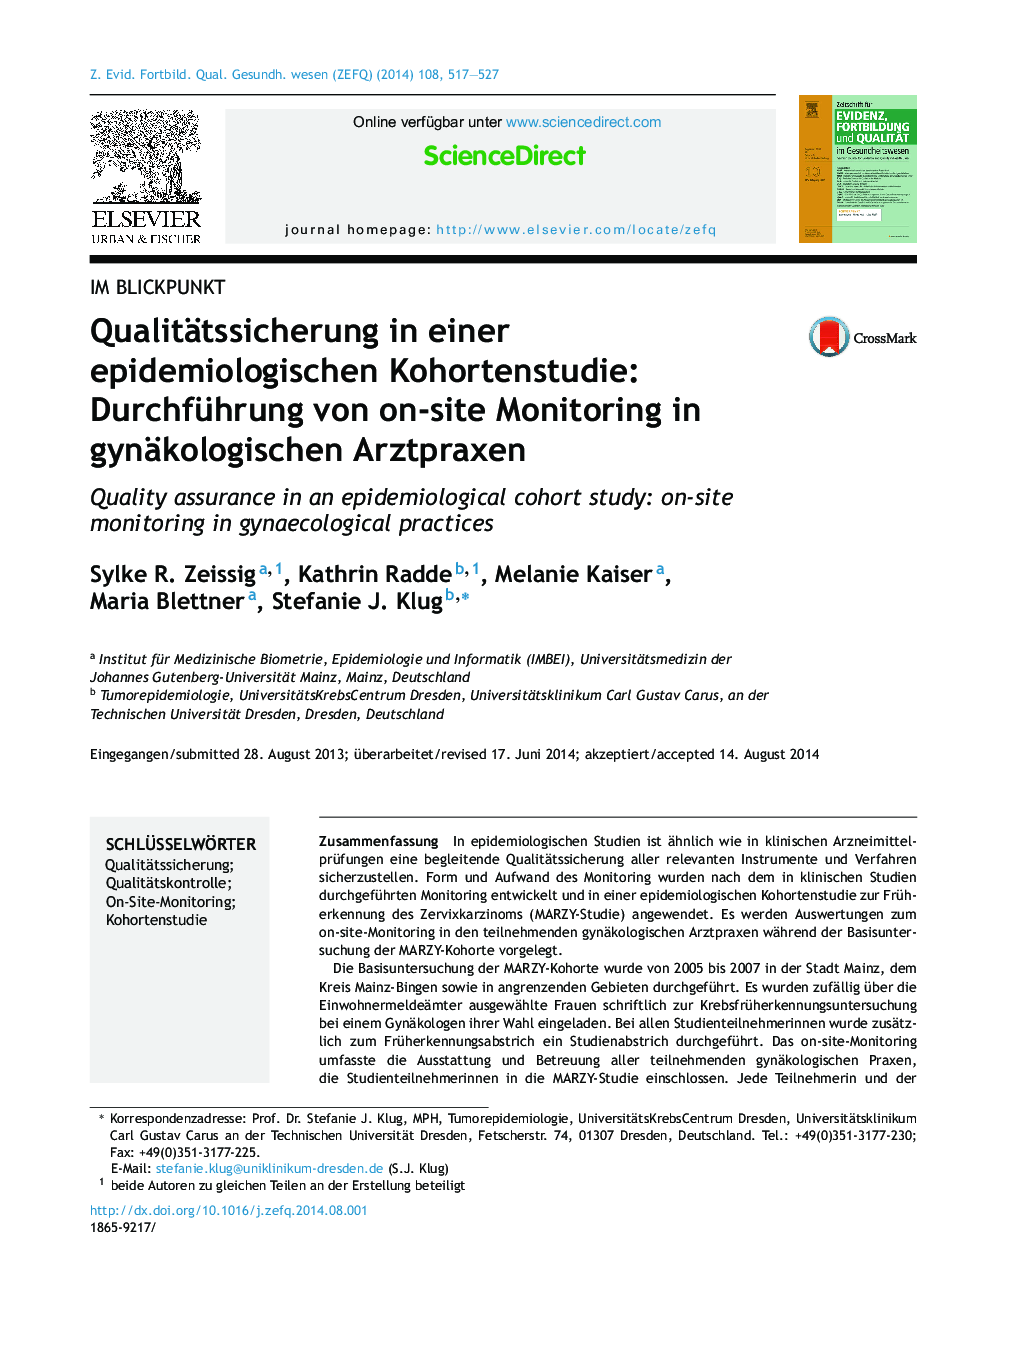 Qualitätssicherung in einer epidemiologischen Kohortenstudie: Durchführung von on-site Monitoring in gynäkologischen Arztpraxen